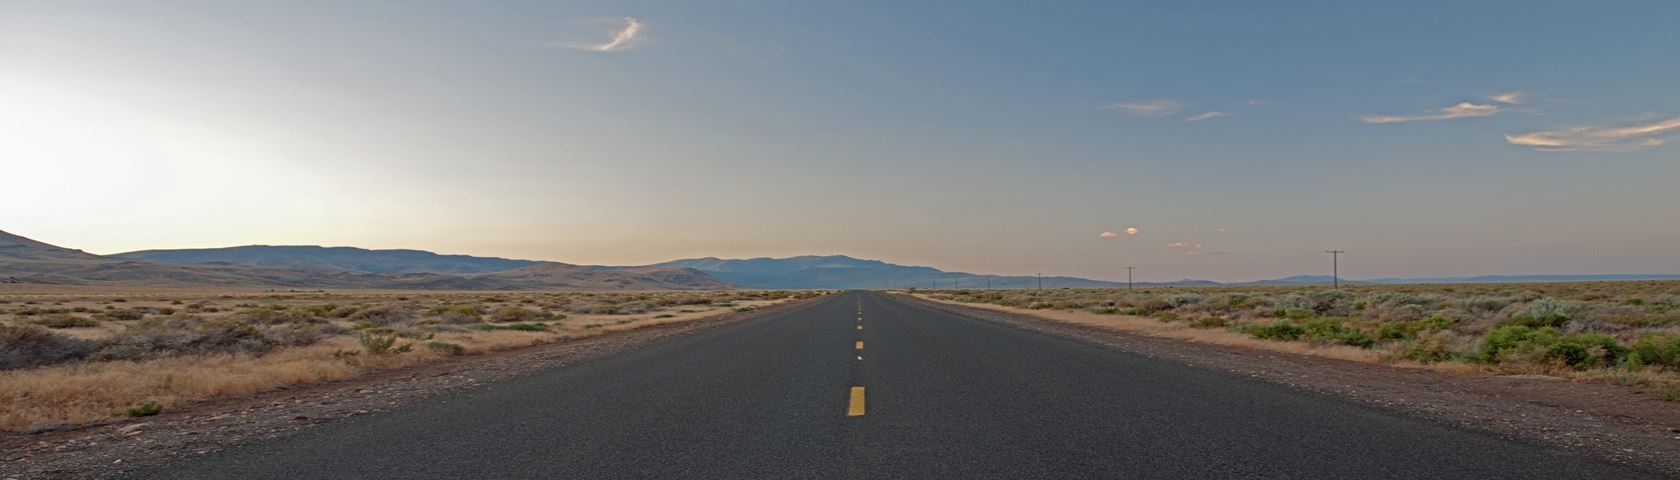 Road to the Alvord desert